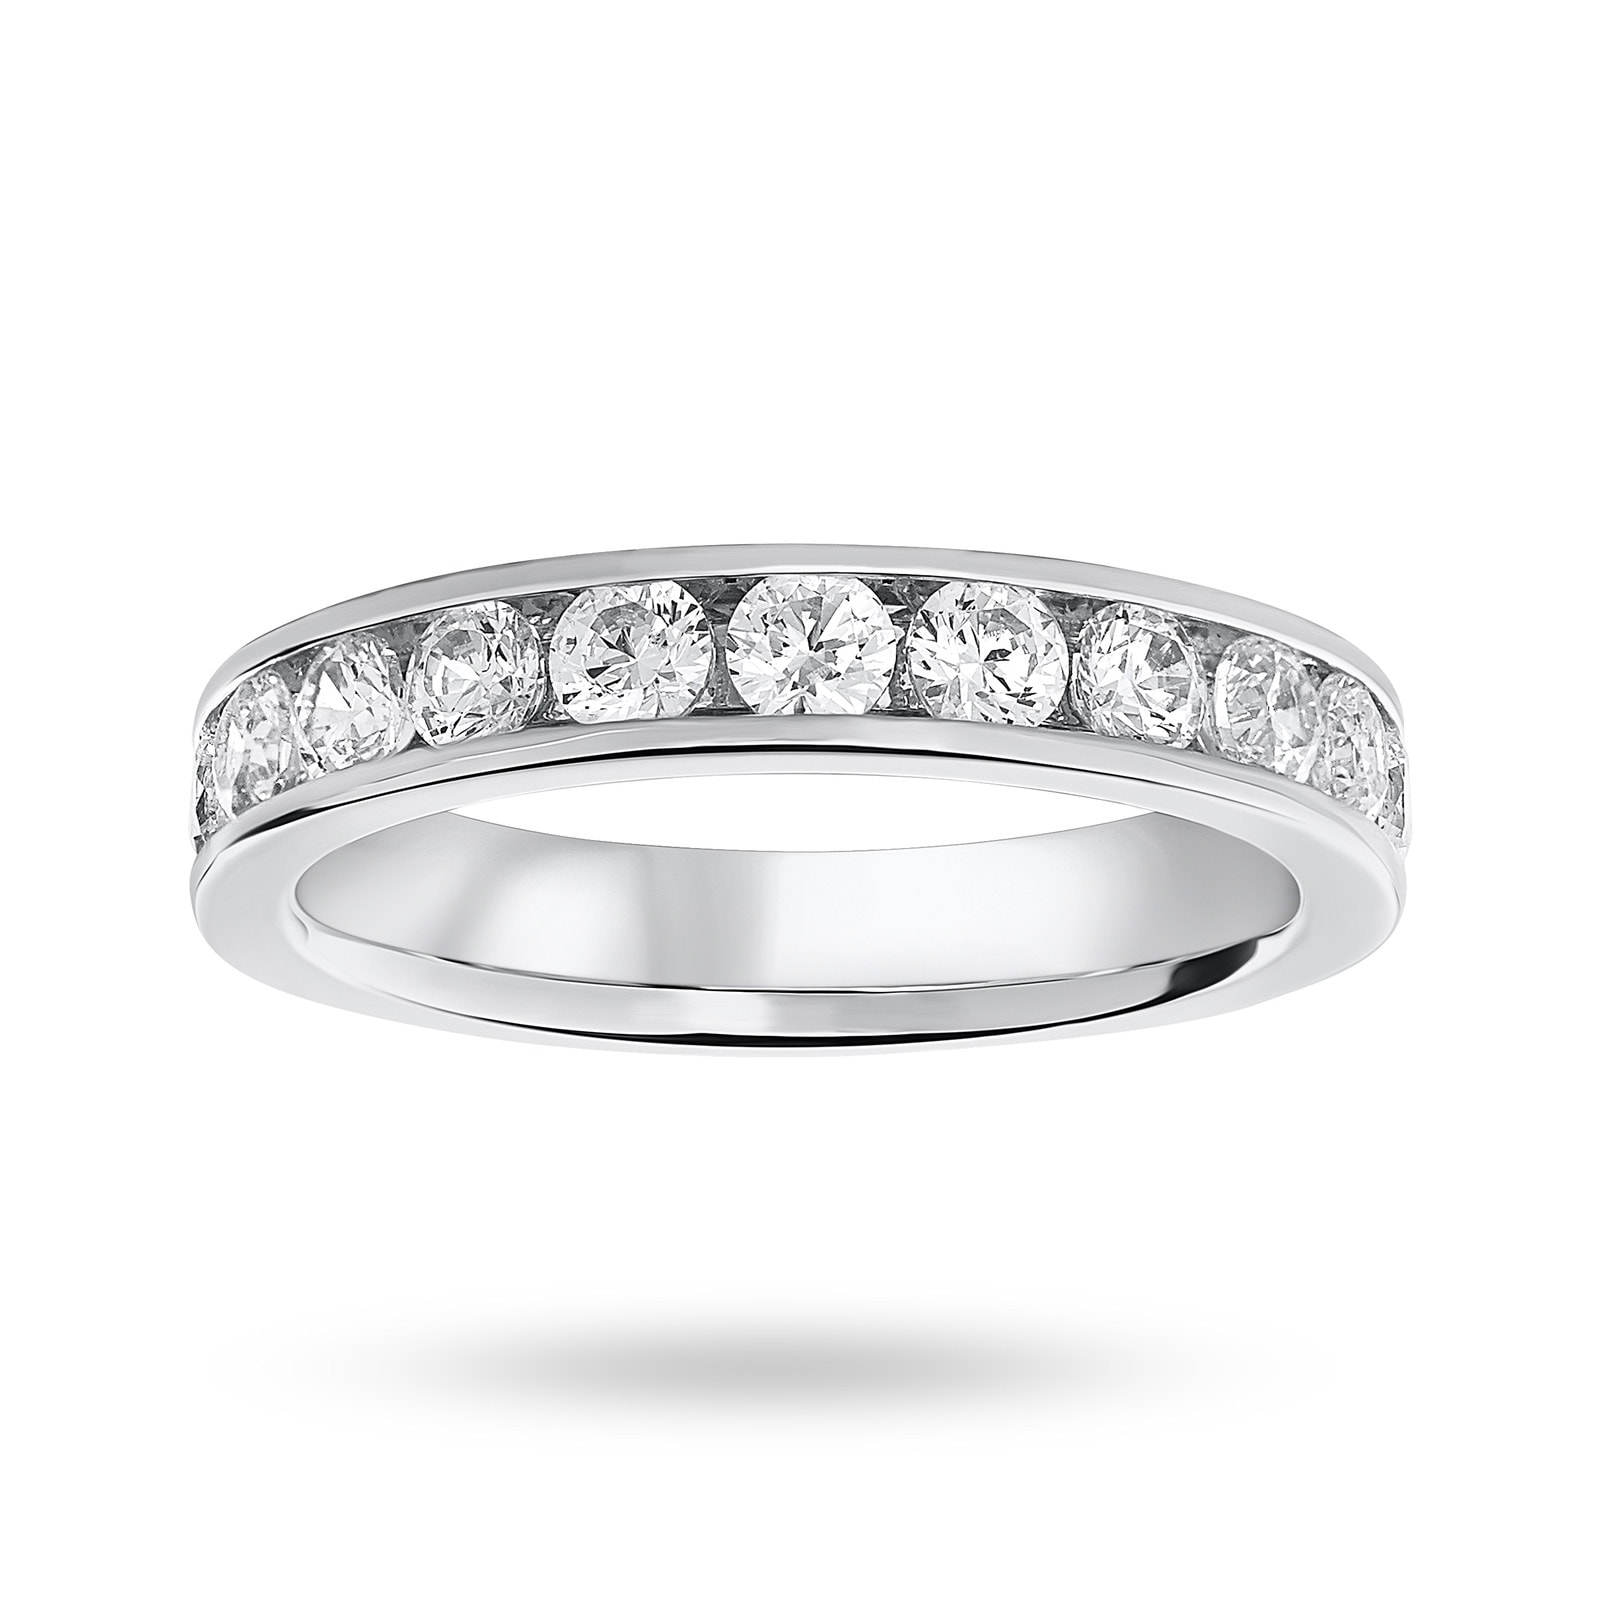 Platinum 1.00 Carat Brilliant Cut Half Eternity Ring - Ring Size P